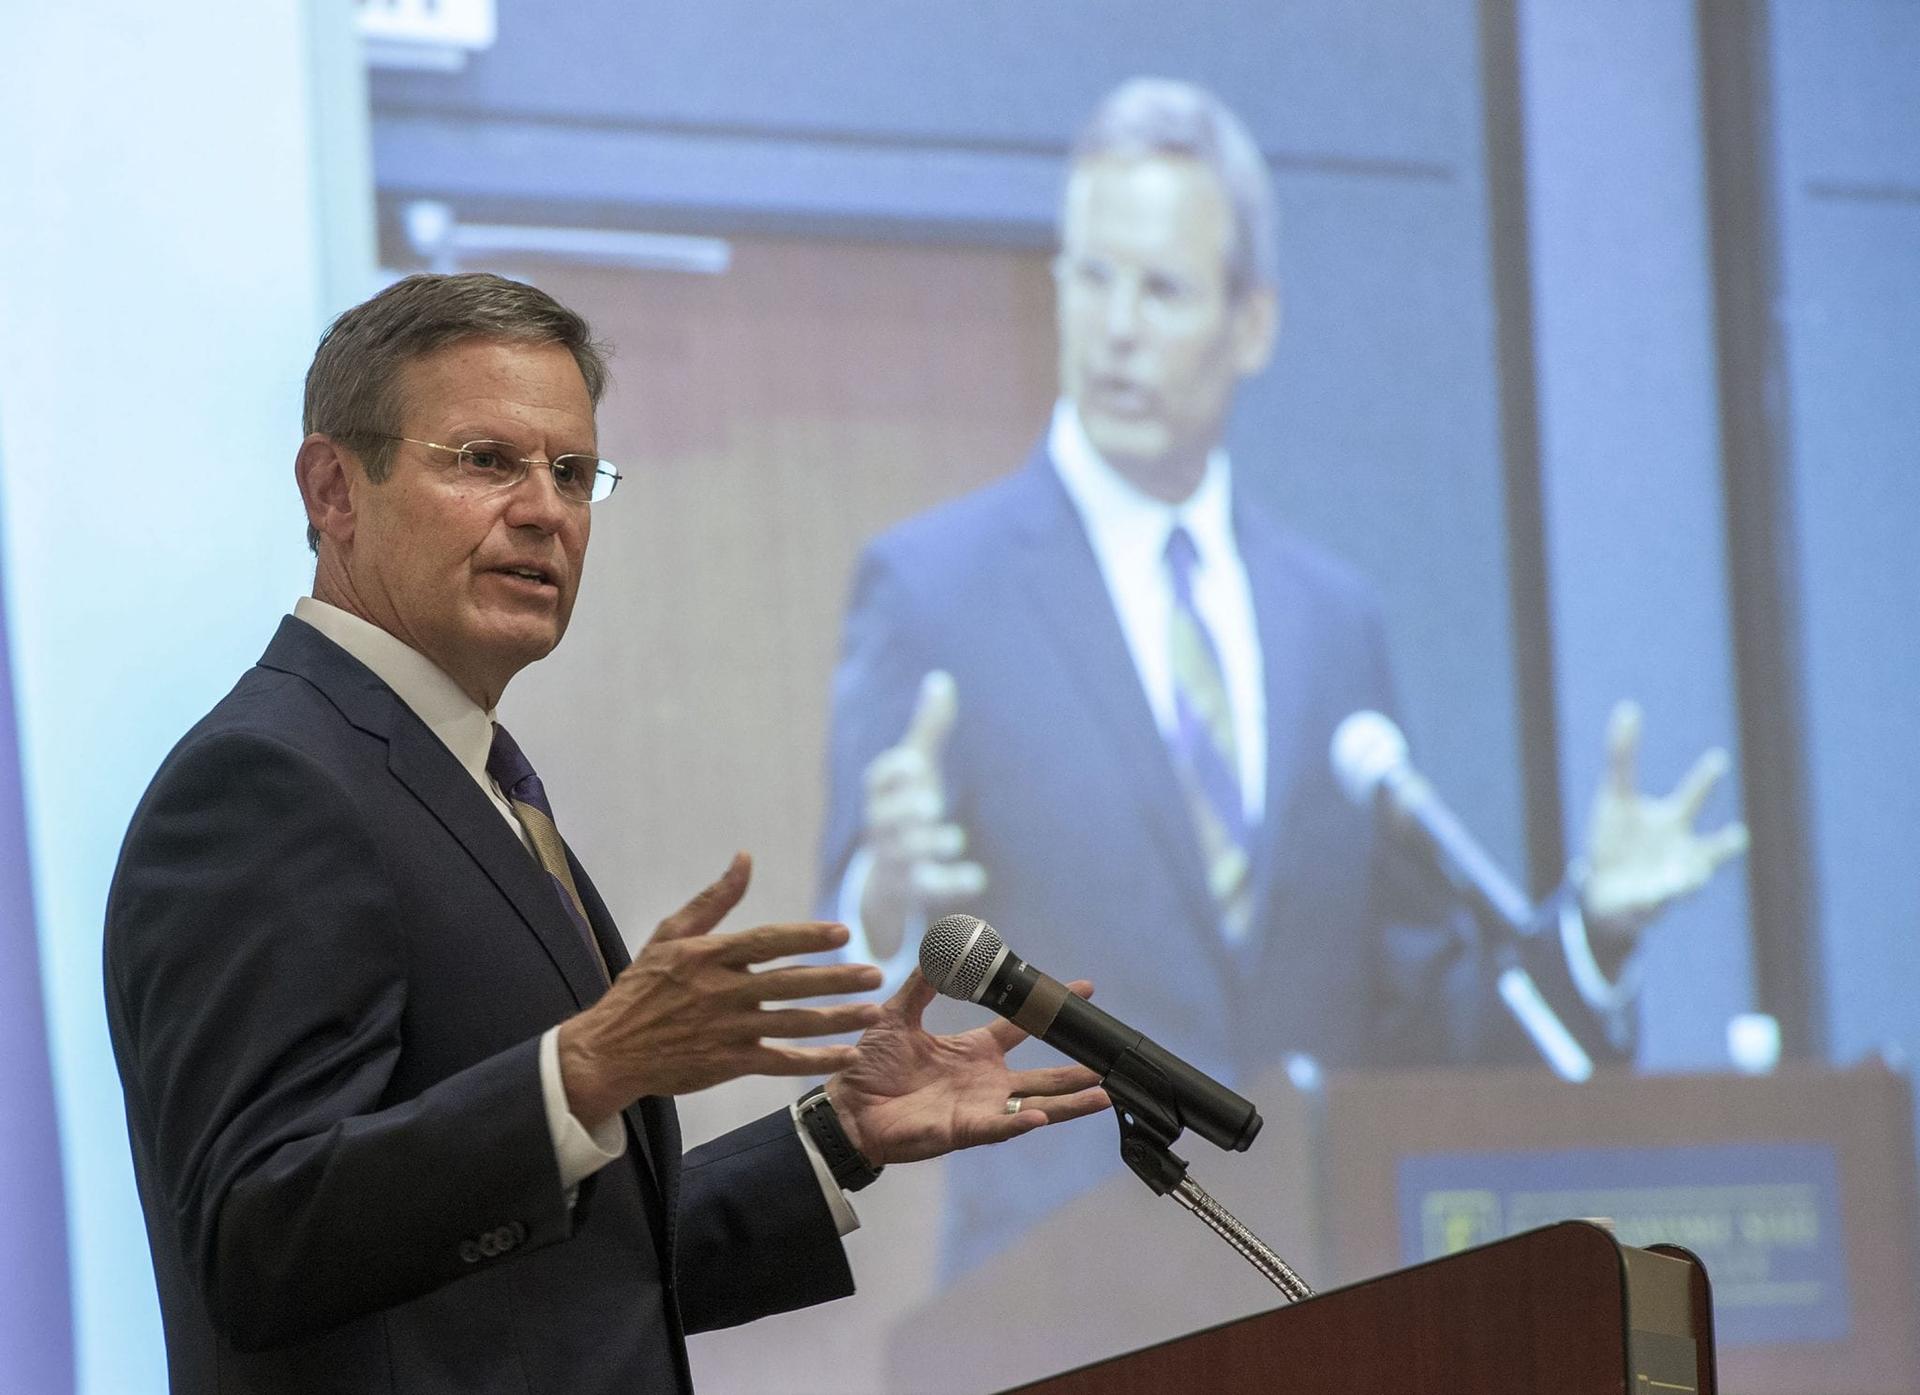 Tennessee governor talks death penalty, faith